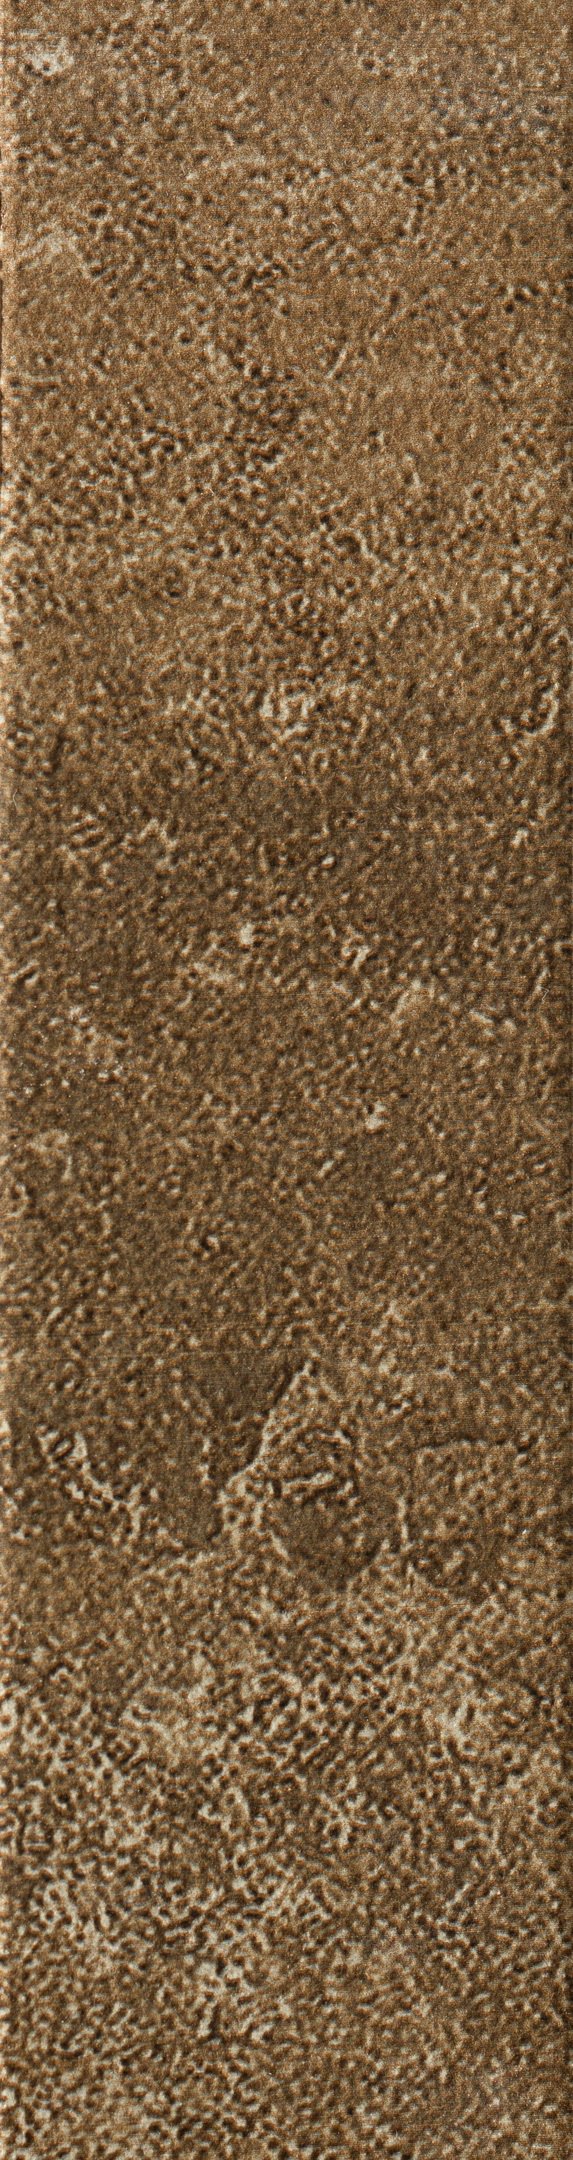 фото Клинкерная плитка керамин юта 4 коричневая 24,5х6,5 см (34 шт.=0,54 кв.м)